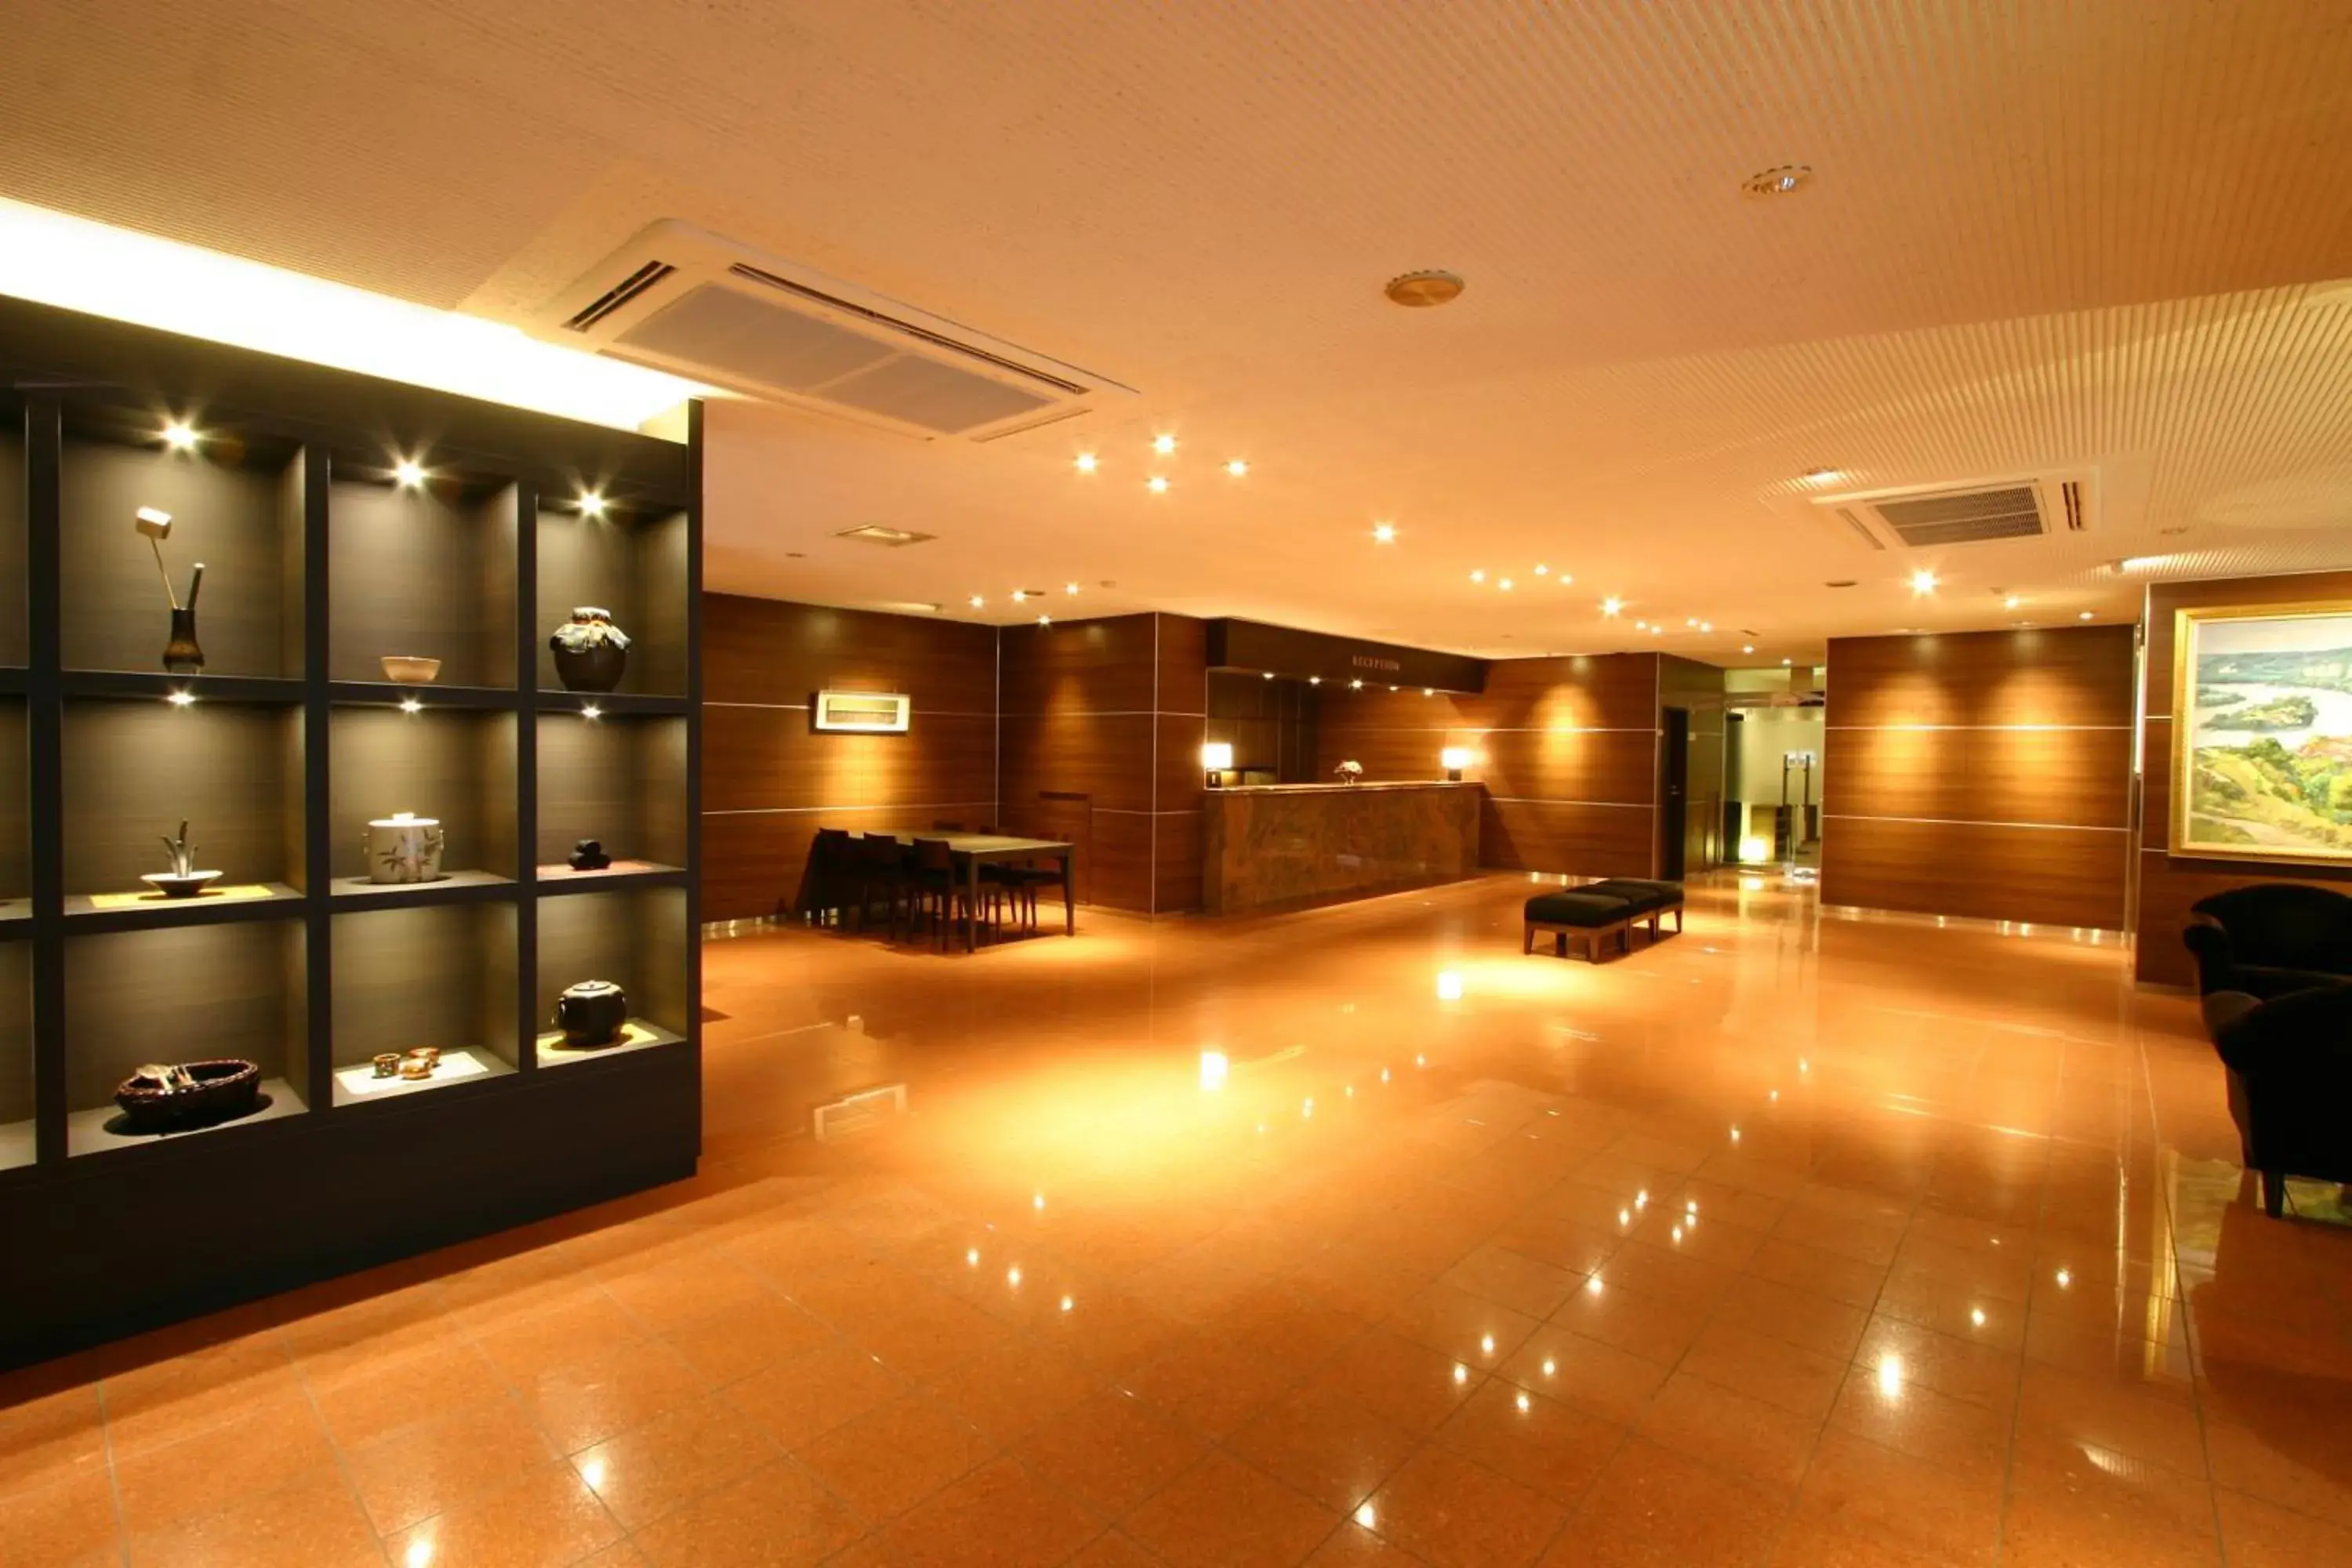 Lobby or reception, Lobby/Reception in Smile Hotel Kawaguchi